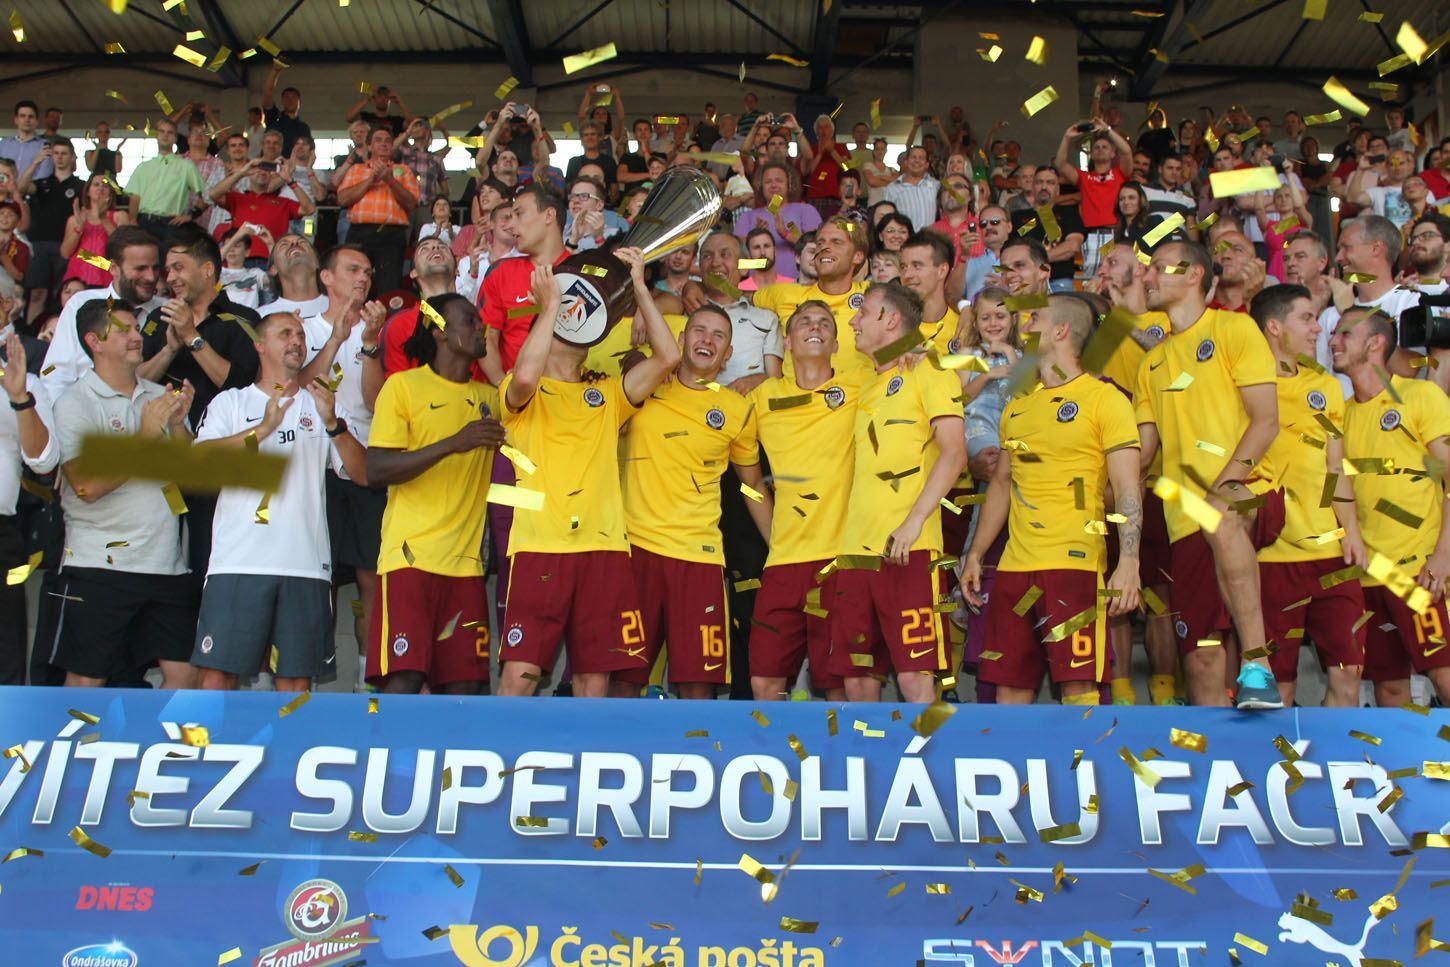 Superpohár 2014, Sparta-Plzeň: Sparta s pohárem